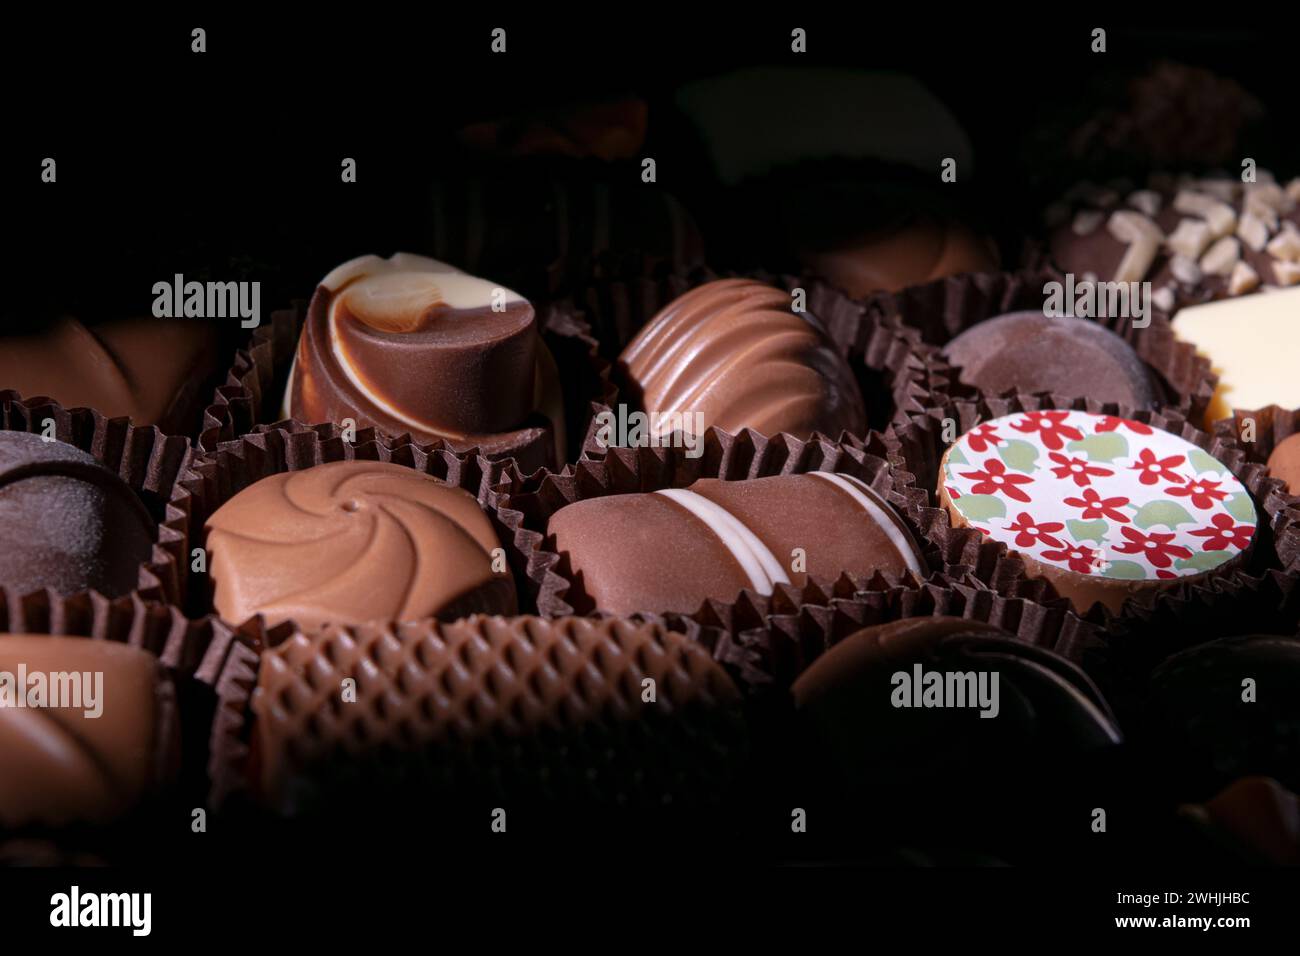 Assortiment de bonbons au chocolat fin Banque D'Images